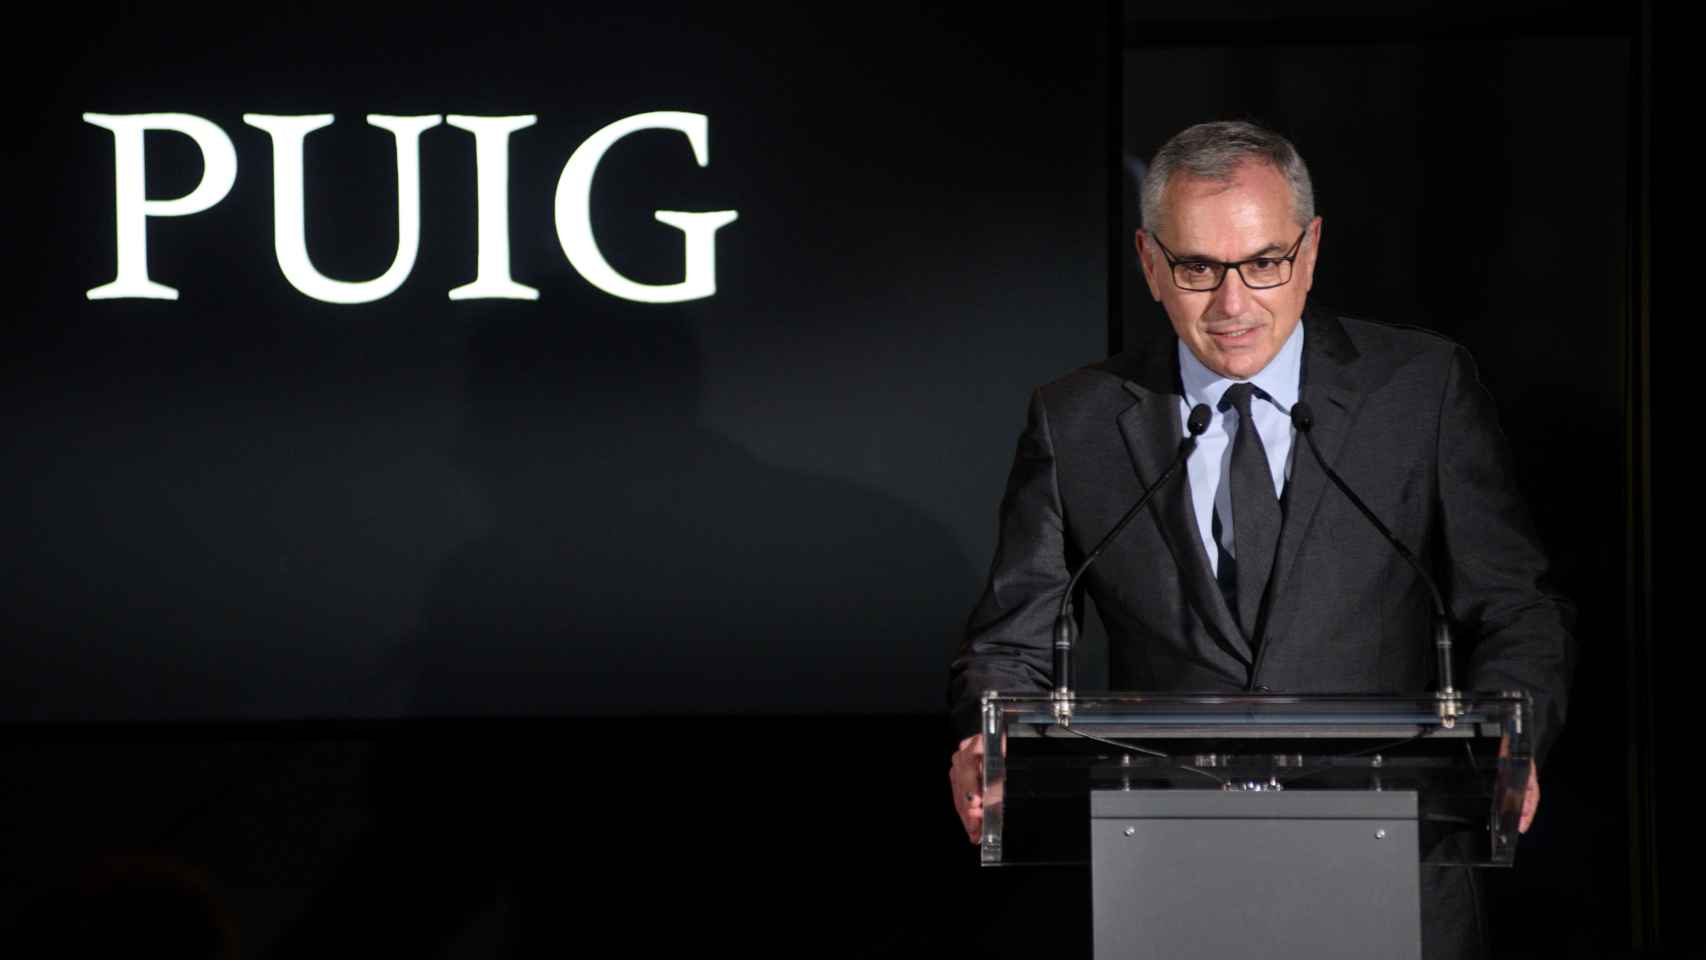 Marc Puig, presidente ejecutivo de la empresa Puig